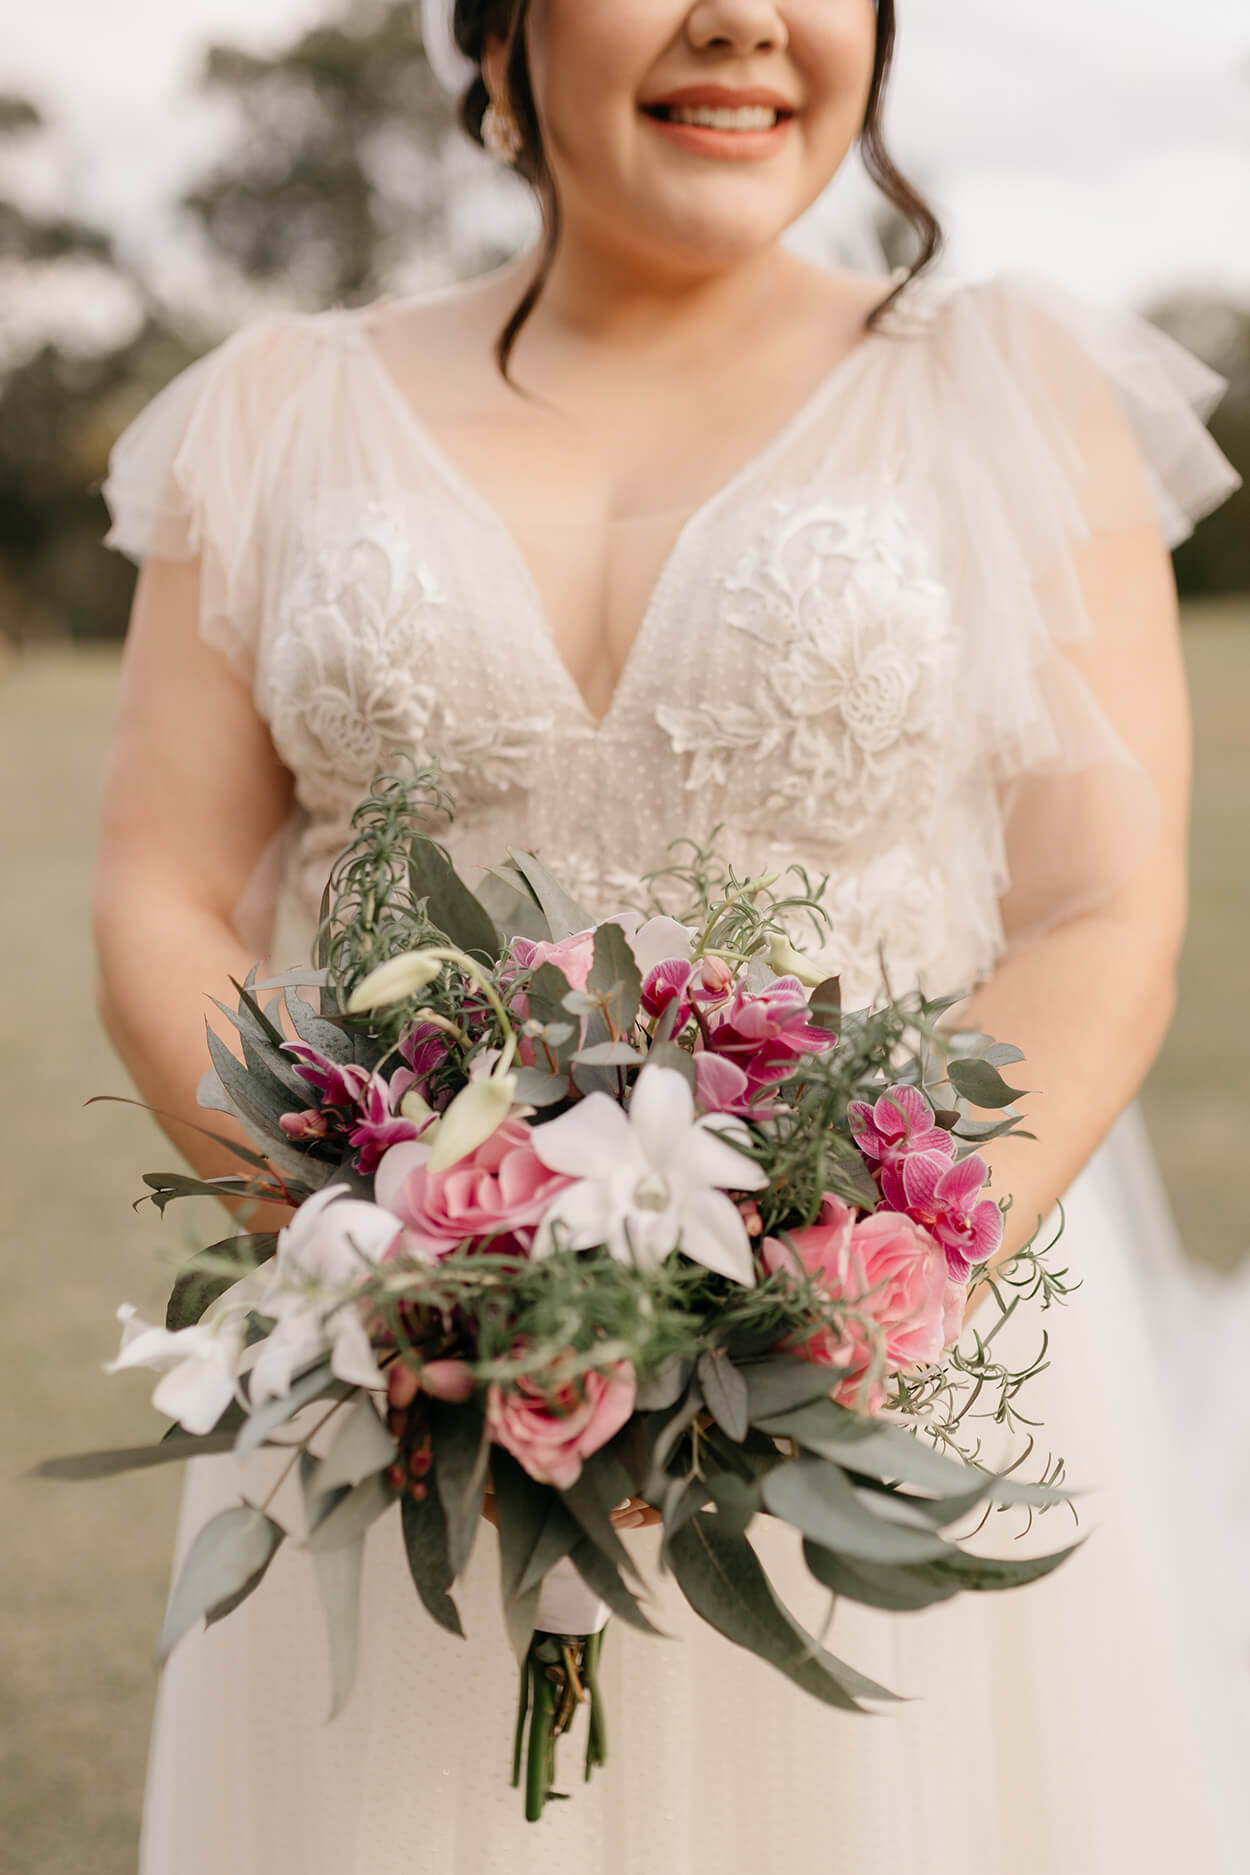 Noiva sorrindo segurando um buquê com flores brancas, rosas escuras e rosas cor de rosa